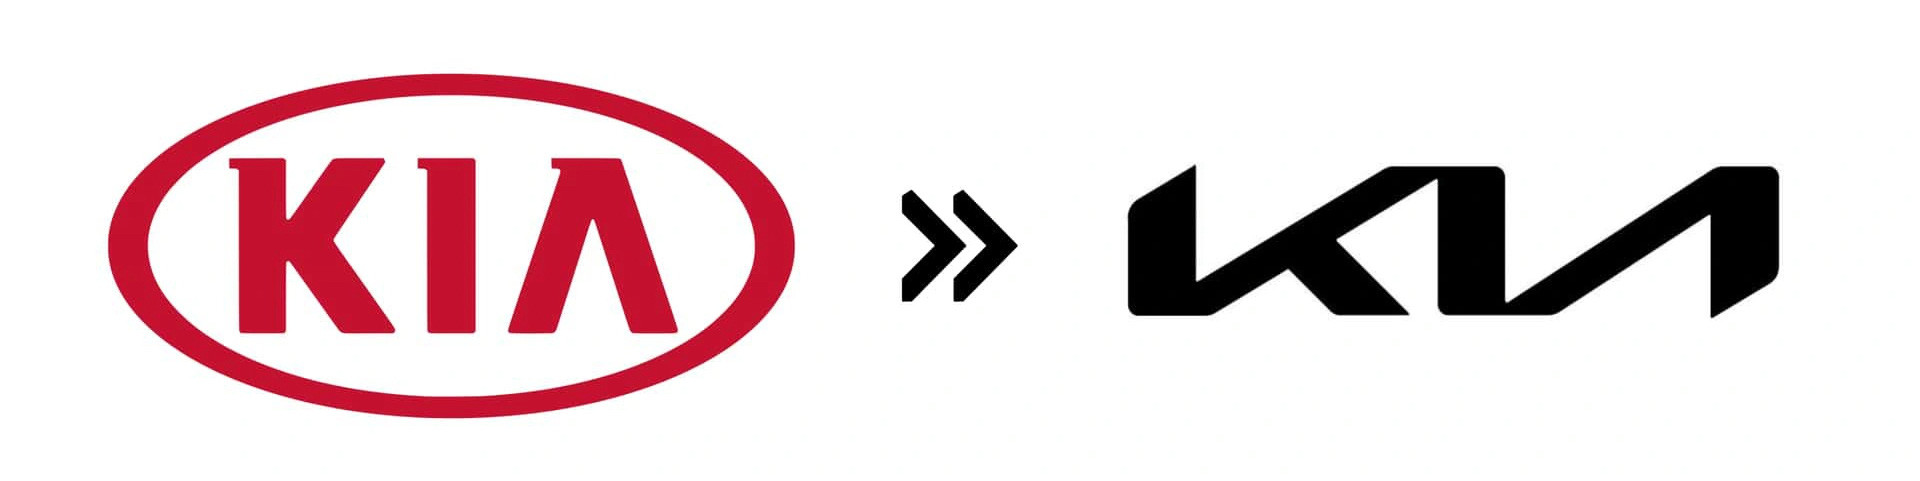 Kia (2021): Khi làm lại logo vào năm 2021, Kia đã thay phông chữ đồng thời loại bỏ hình bầu dục bên ngoài xe. Dù vậy, không ít người đã nhìn nhầm chữ Kia thành KN cũng vì thay đổi này - Ảnh: Motor1